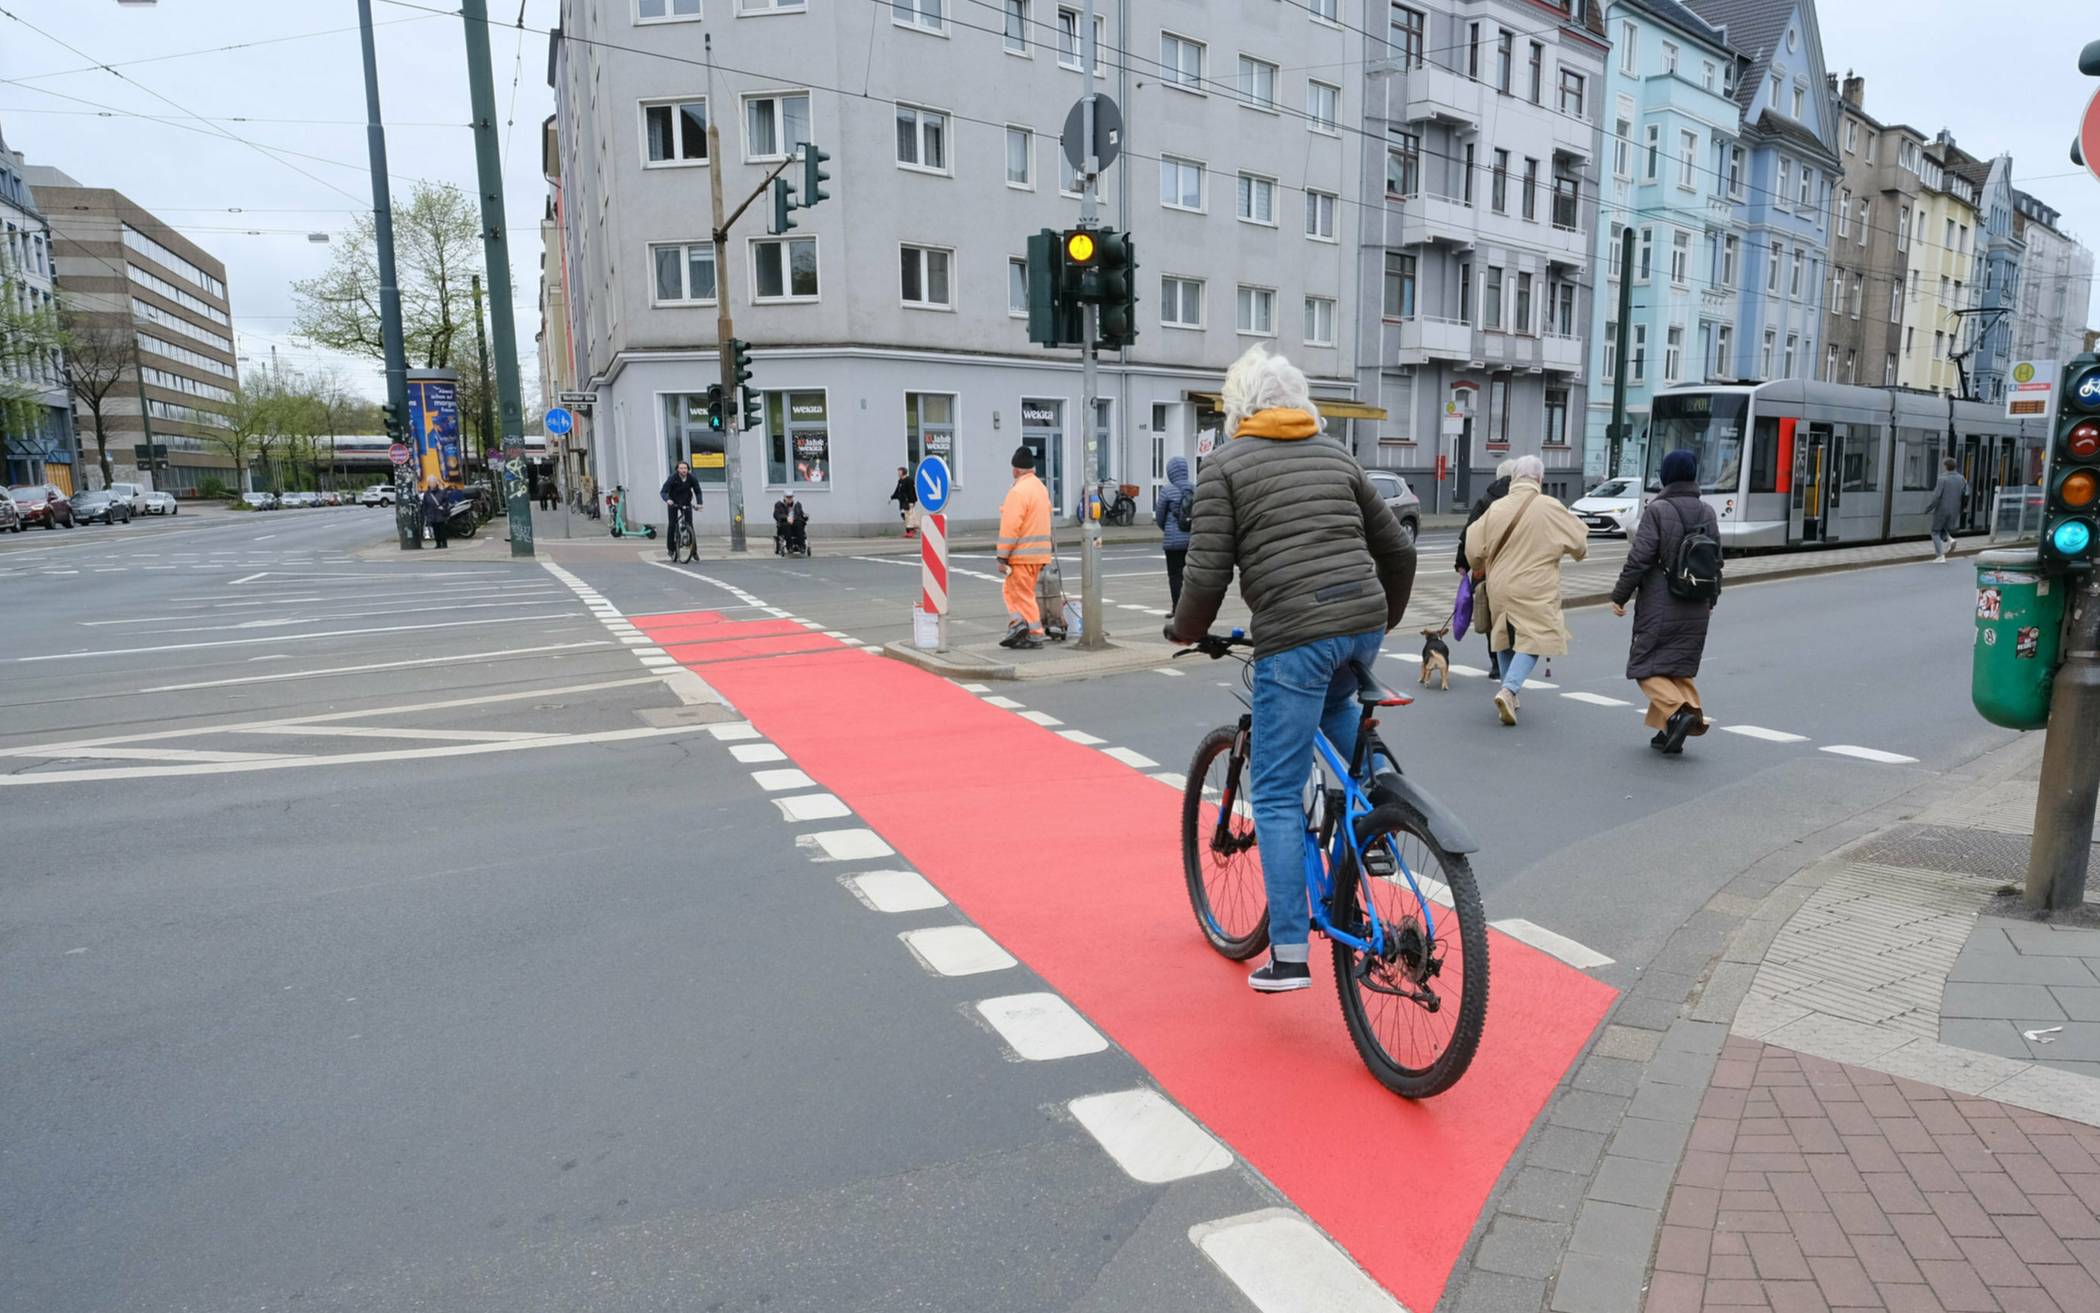  Mehr Sicherheit durch Sichtbarkeit für Radfahrende sollen die neuen roten Radwege an demnächst 13 Kreuzungen bieten. 